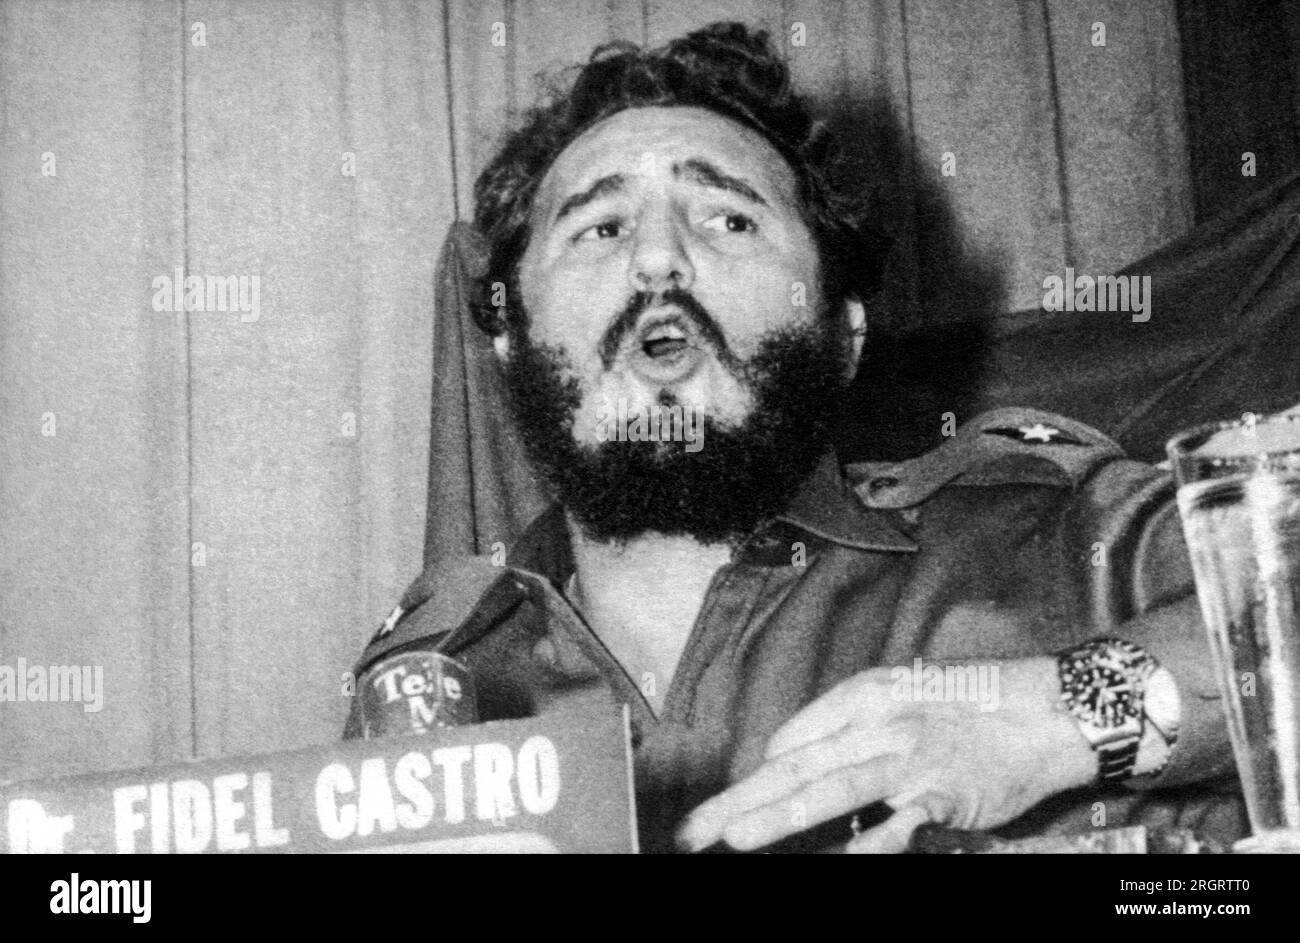 Cuba : c. 1959 le Dr Fidel Castro prend la parole lors d'une conférence. Banque D'Images